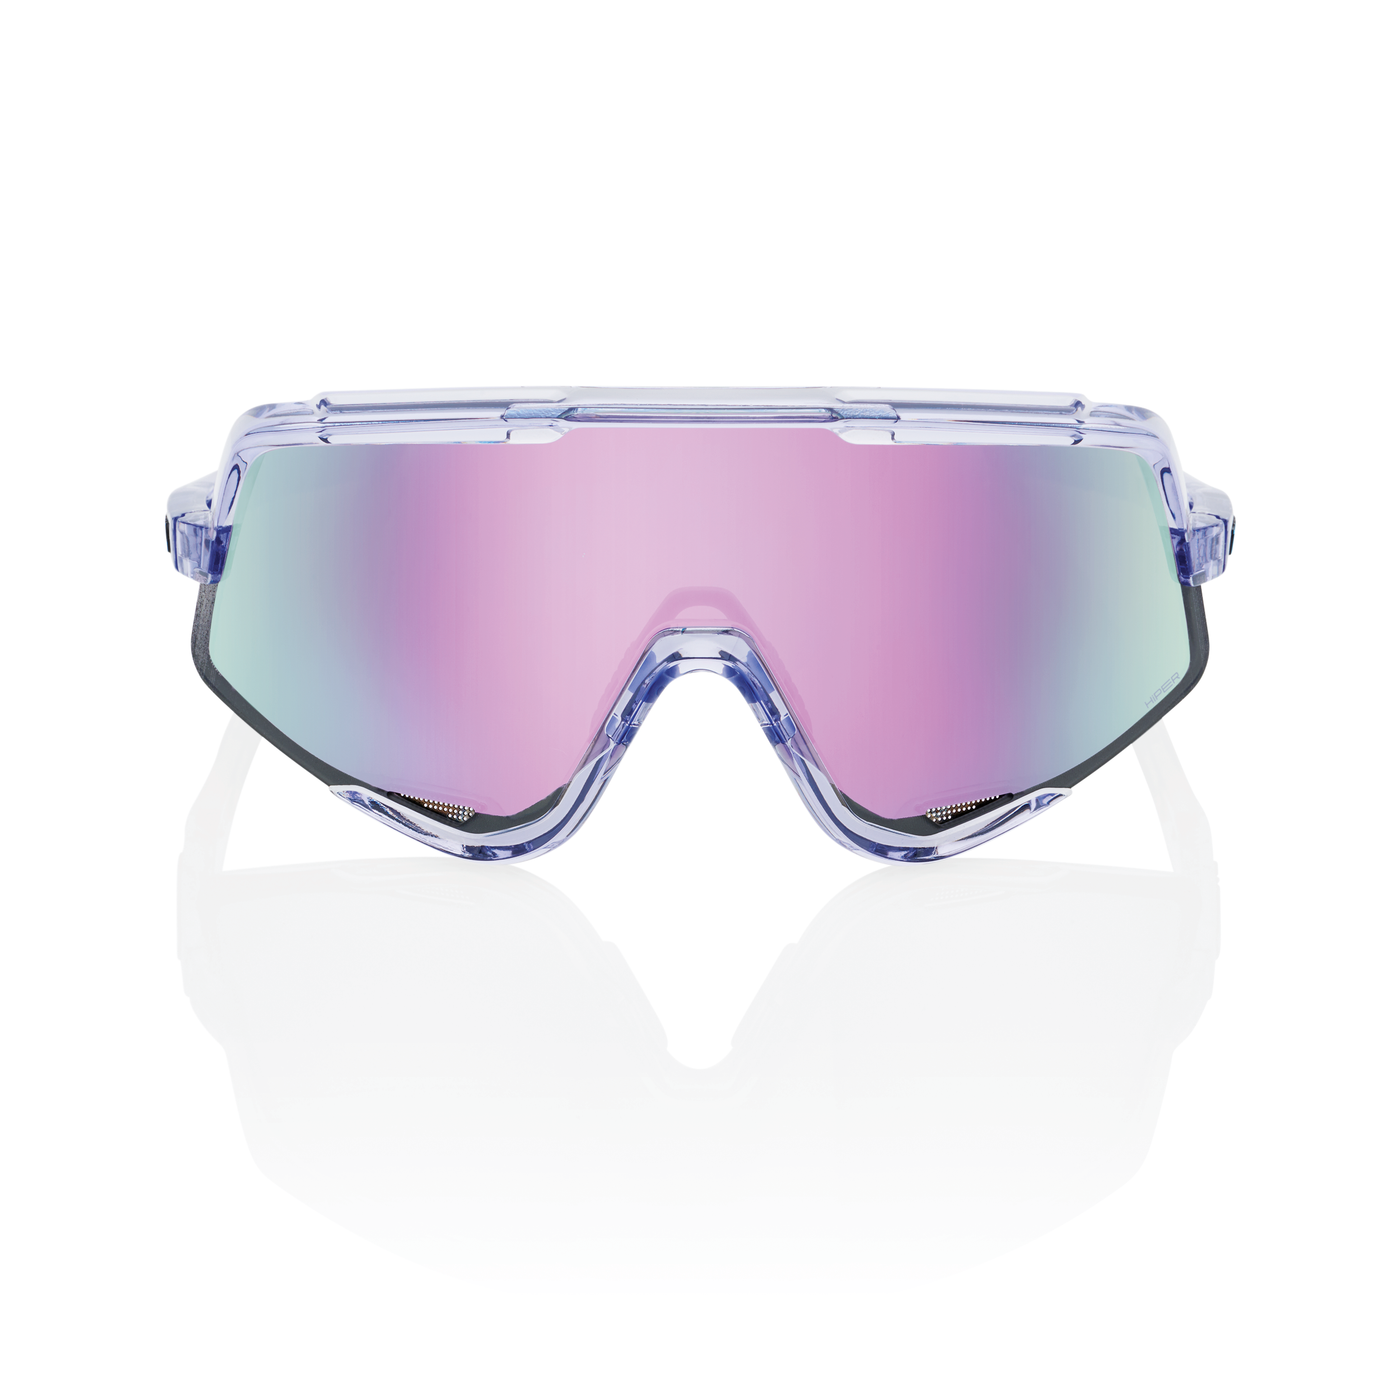 GLENDALE  Polished Translucent Lavender - HiPER Lavender Mirror Lens